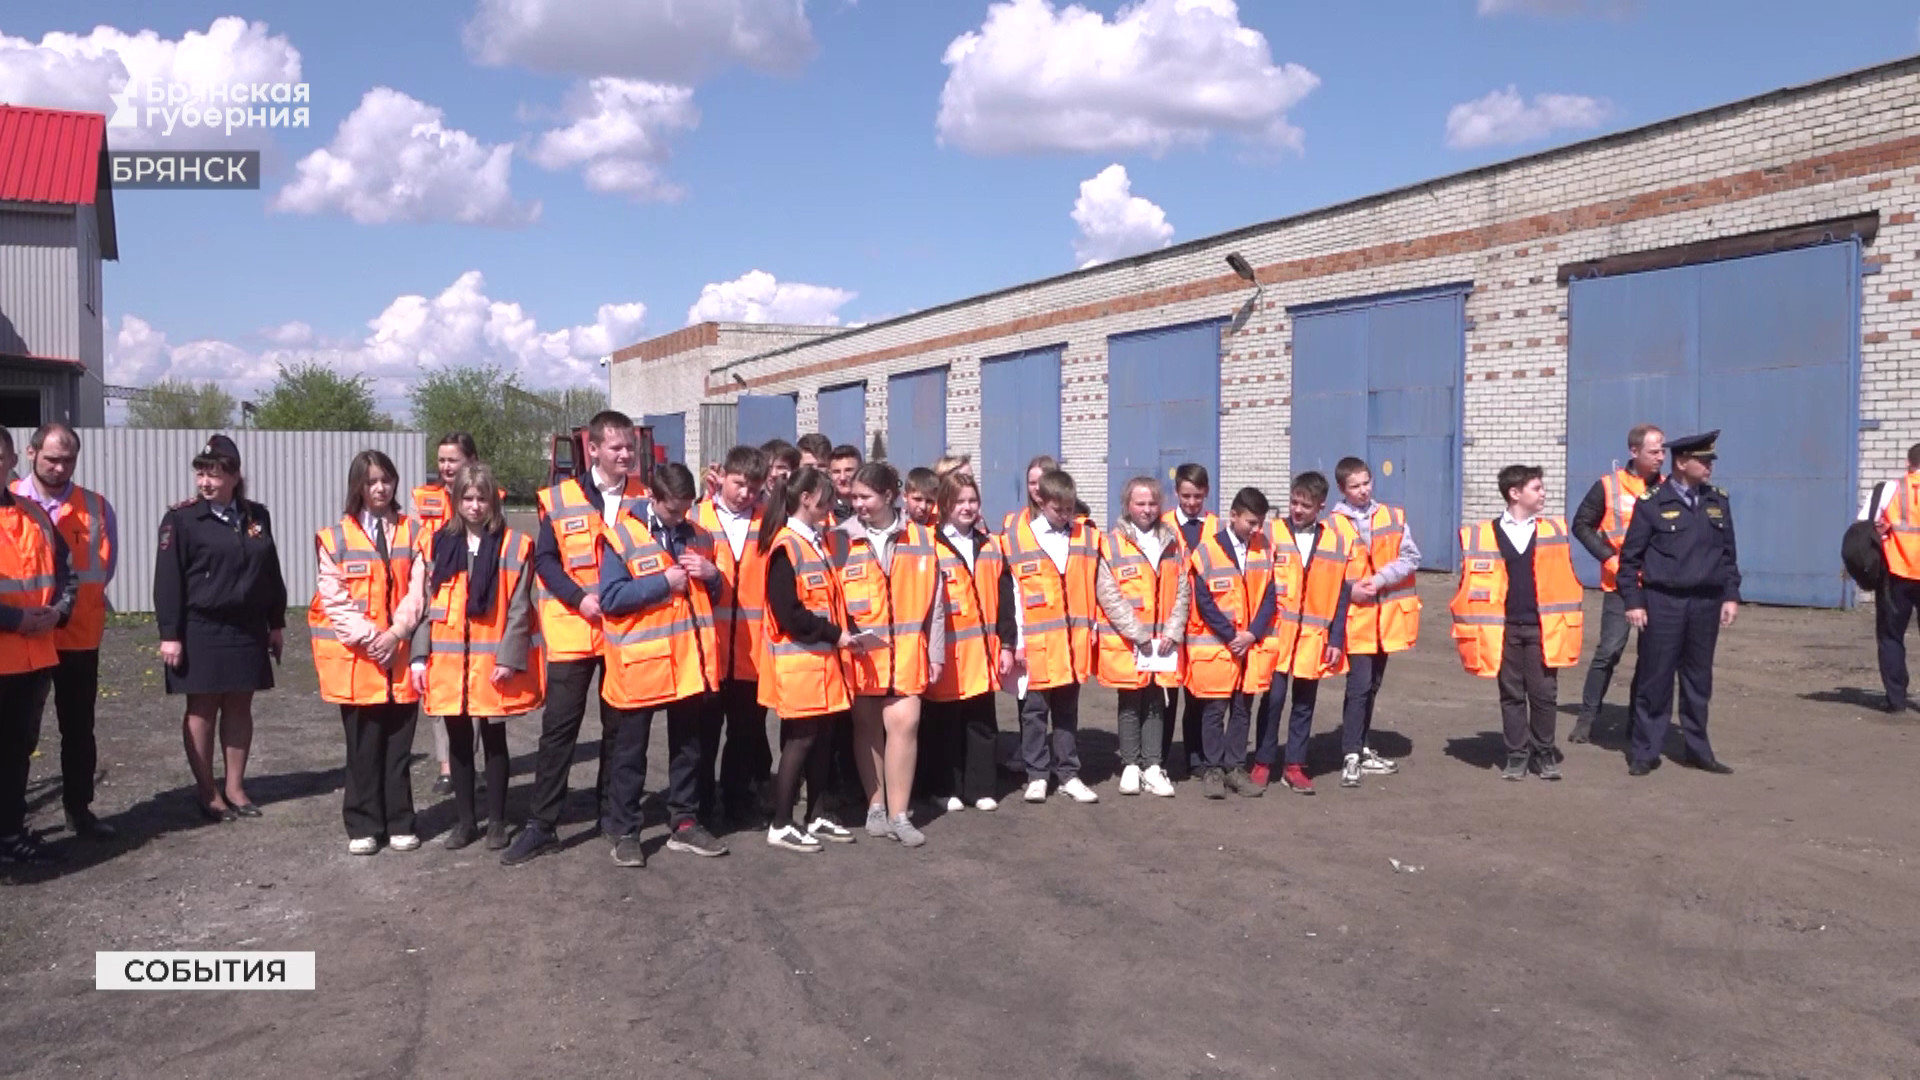 Урок безопасности для учеников школы №40 Брянска провели в локомотивном депо